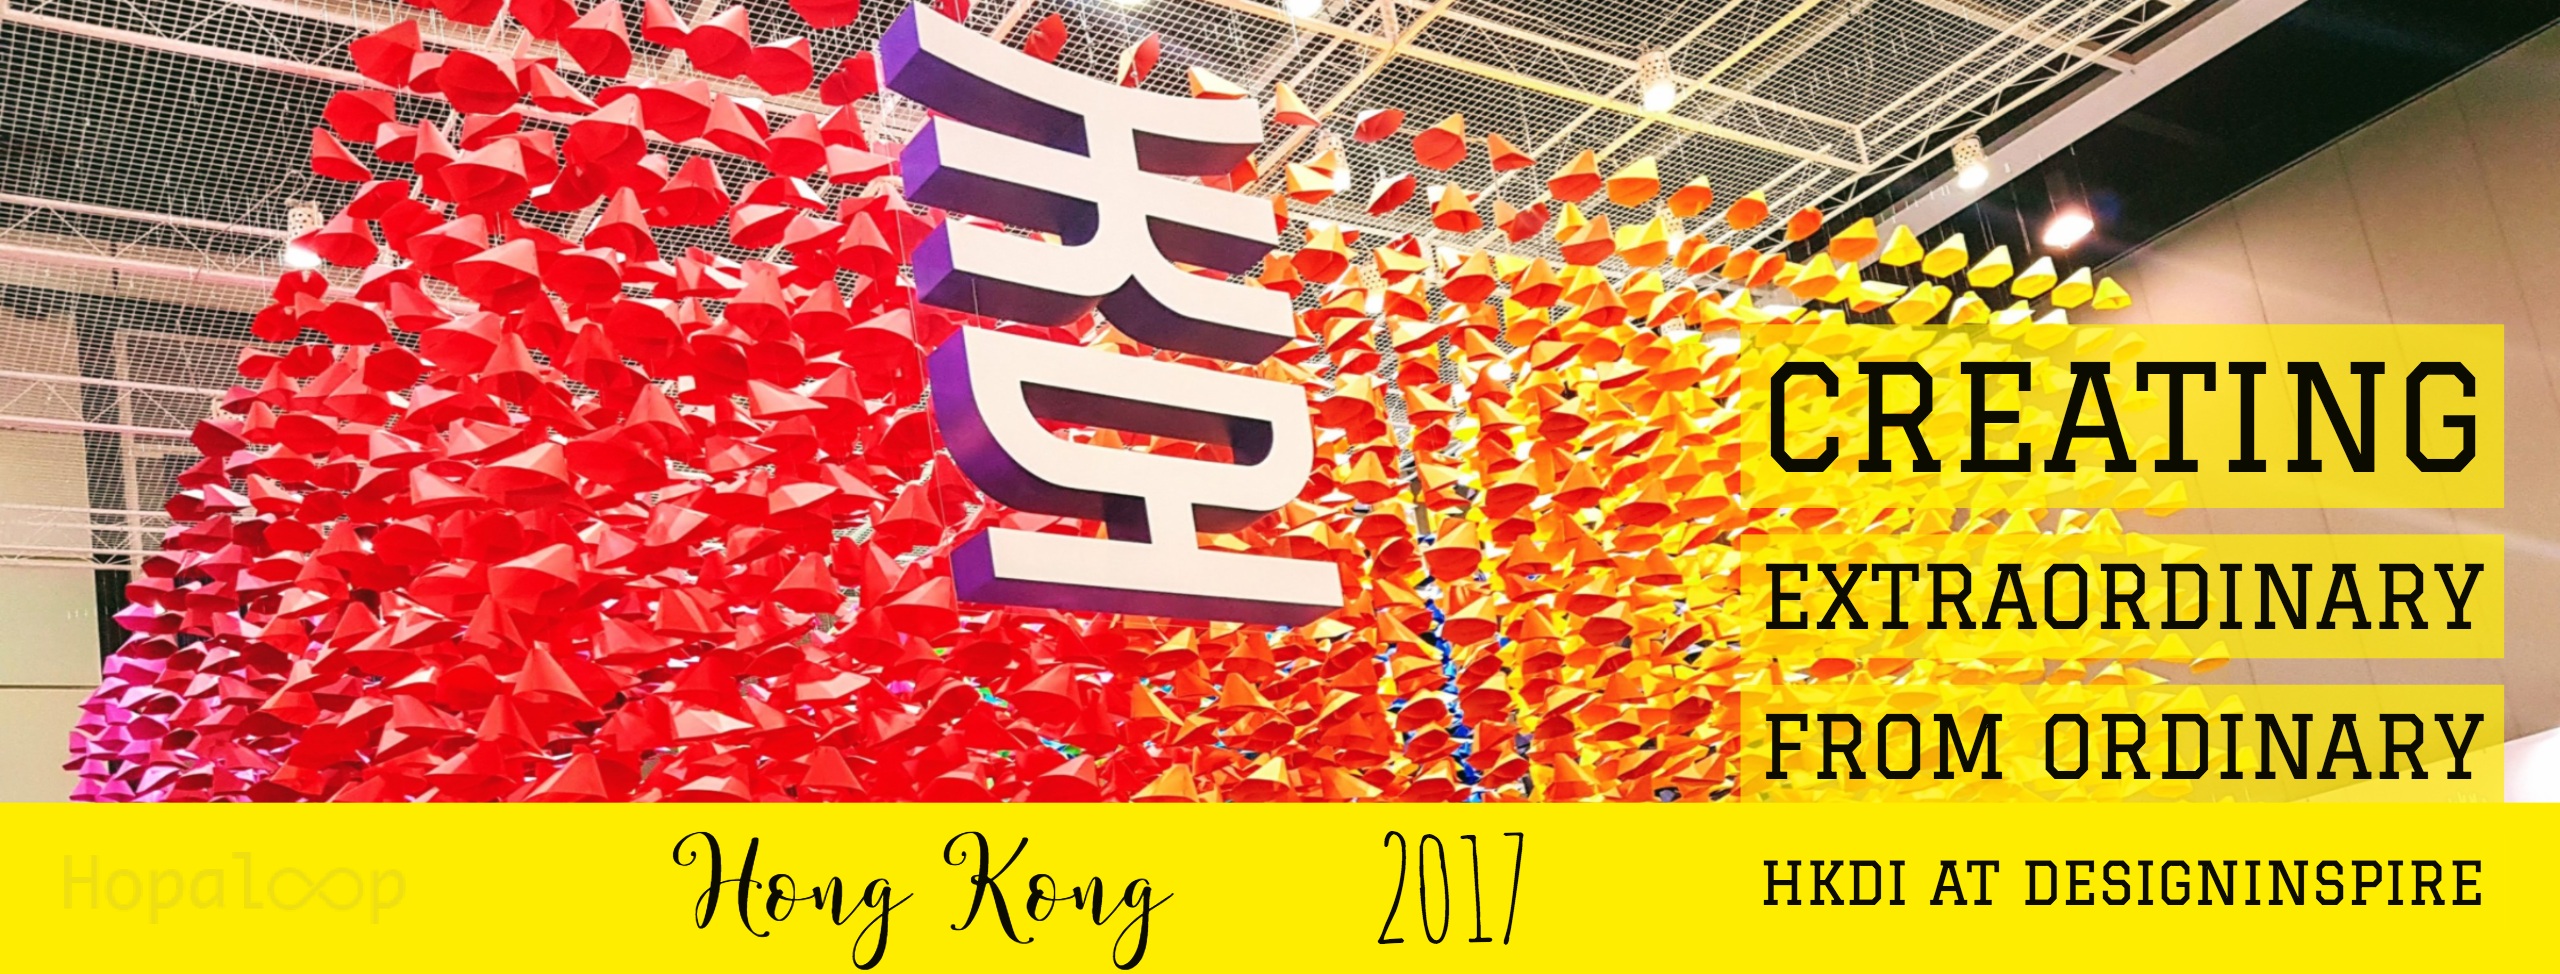 DesignInspire HK 2017 event